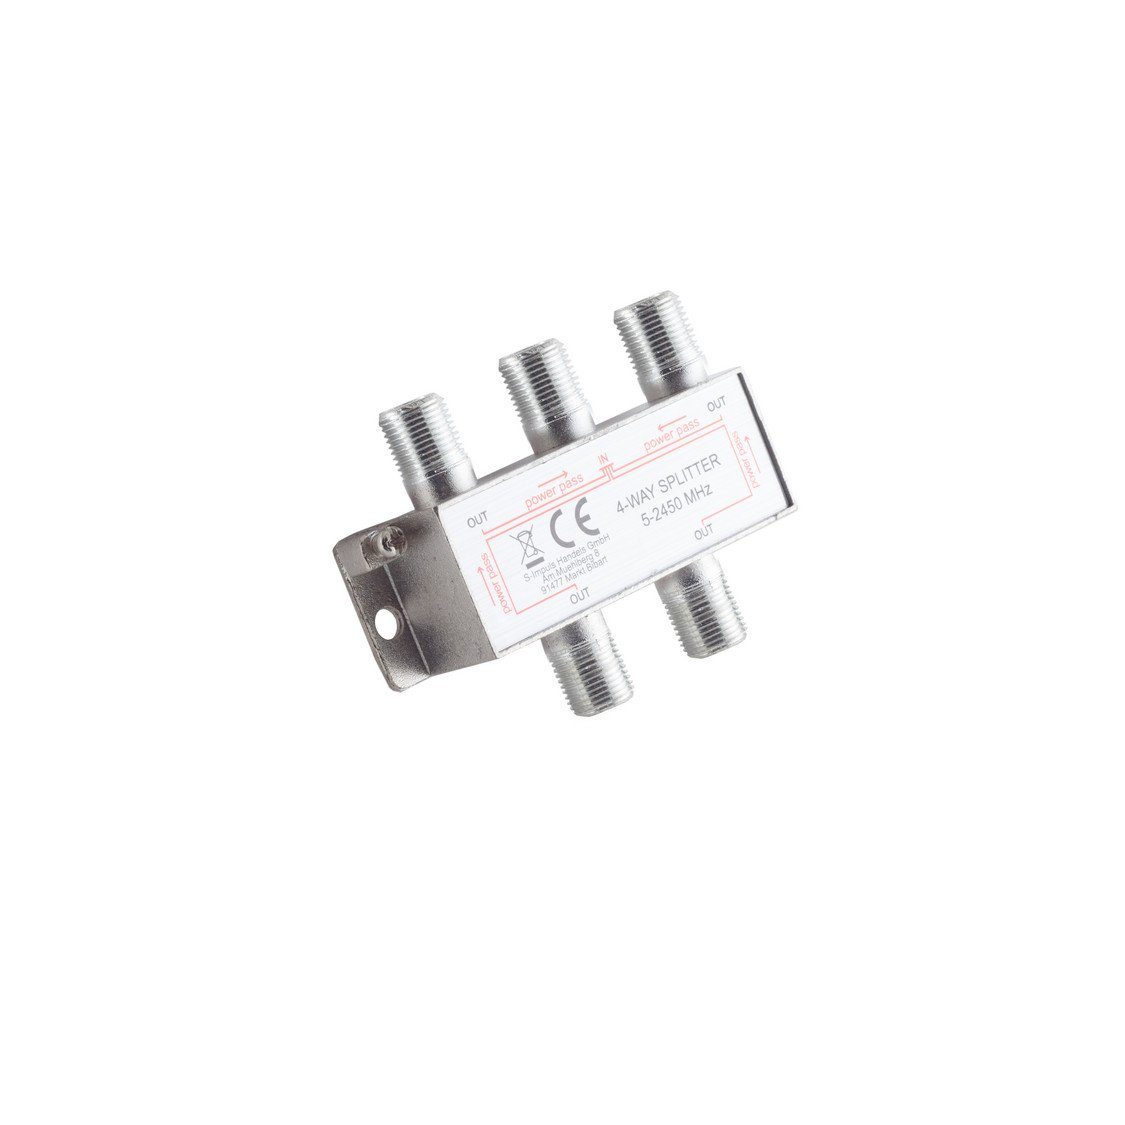 Stammverteiler 5-2400 DC Koax-Kabelverbinder 4-fach; MHz connectivity® maximum F-Serie; S/CONN 85dB